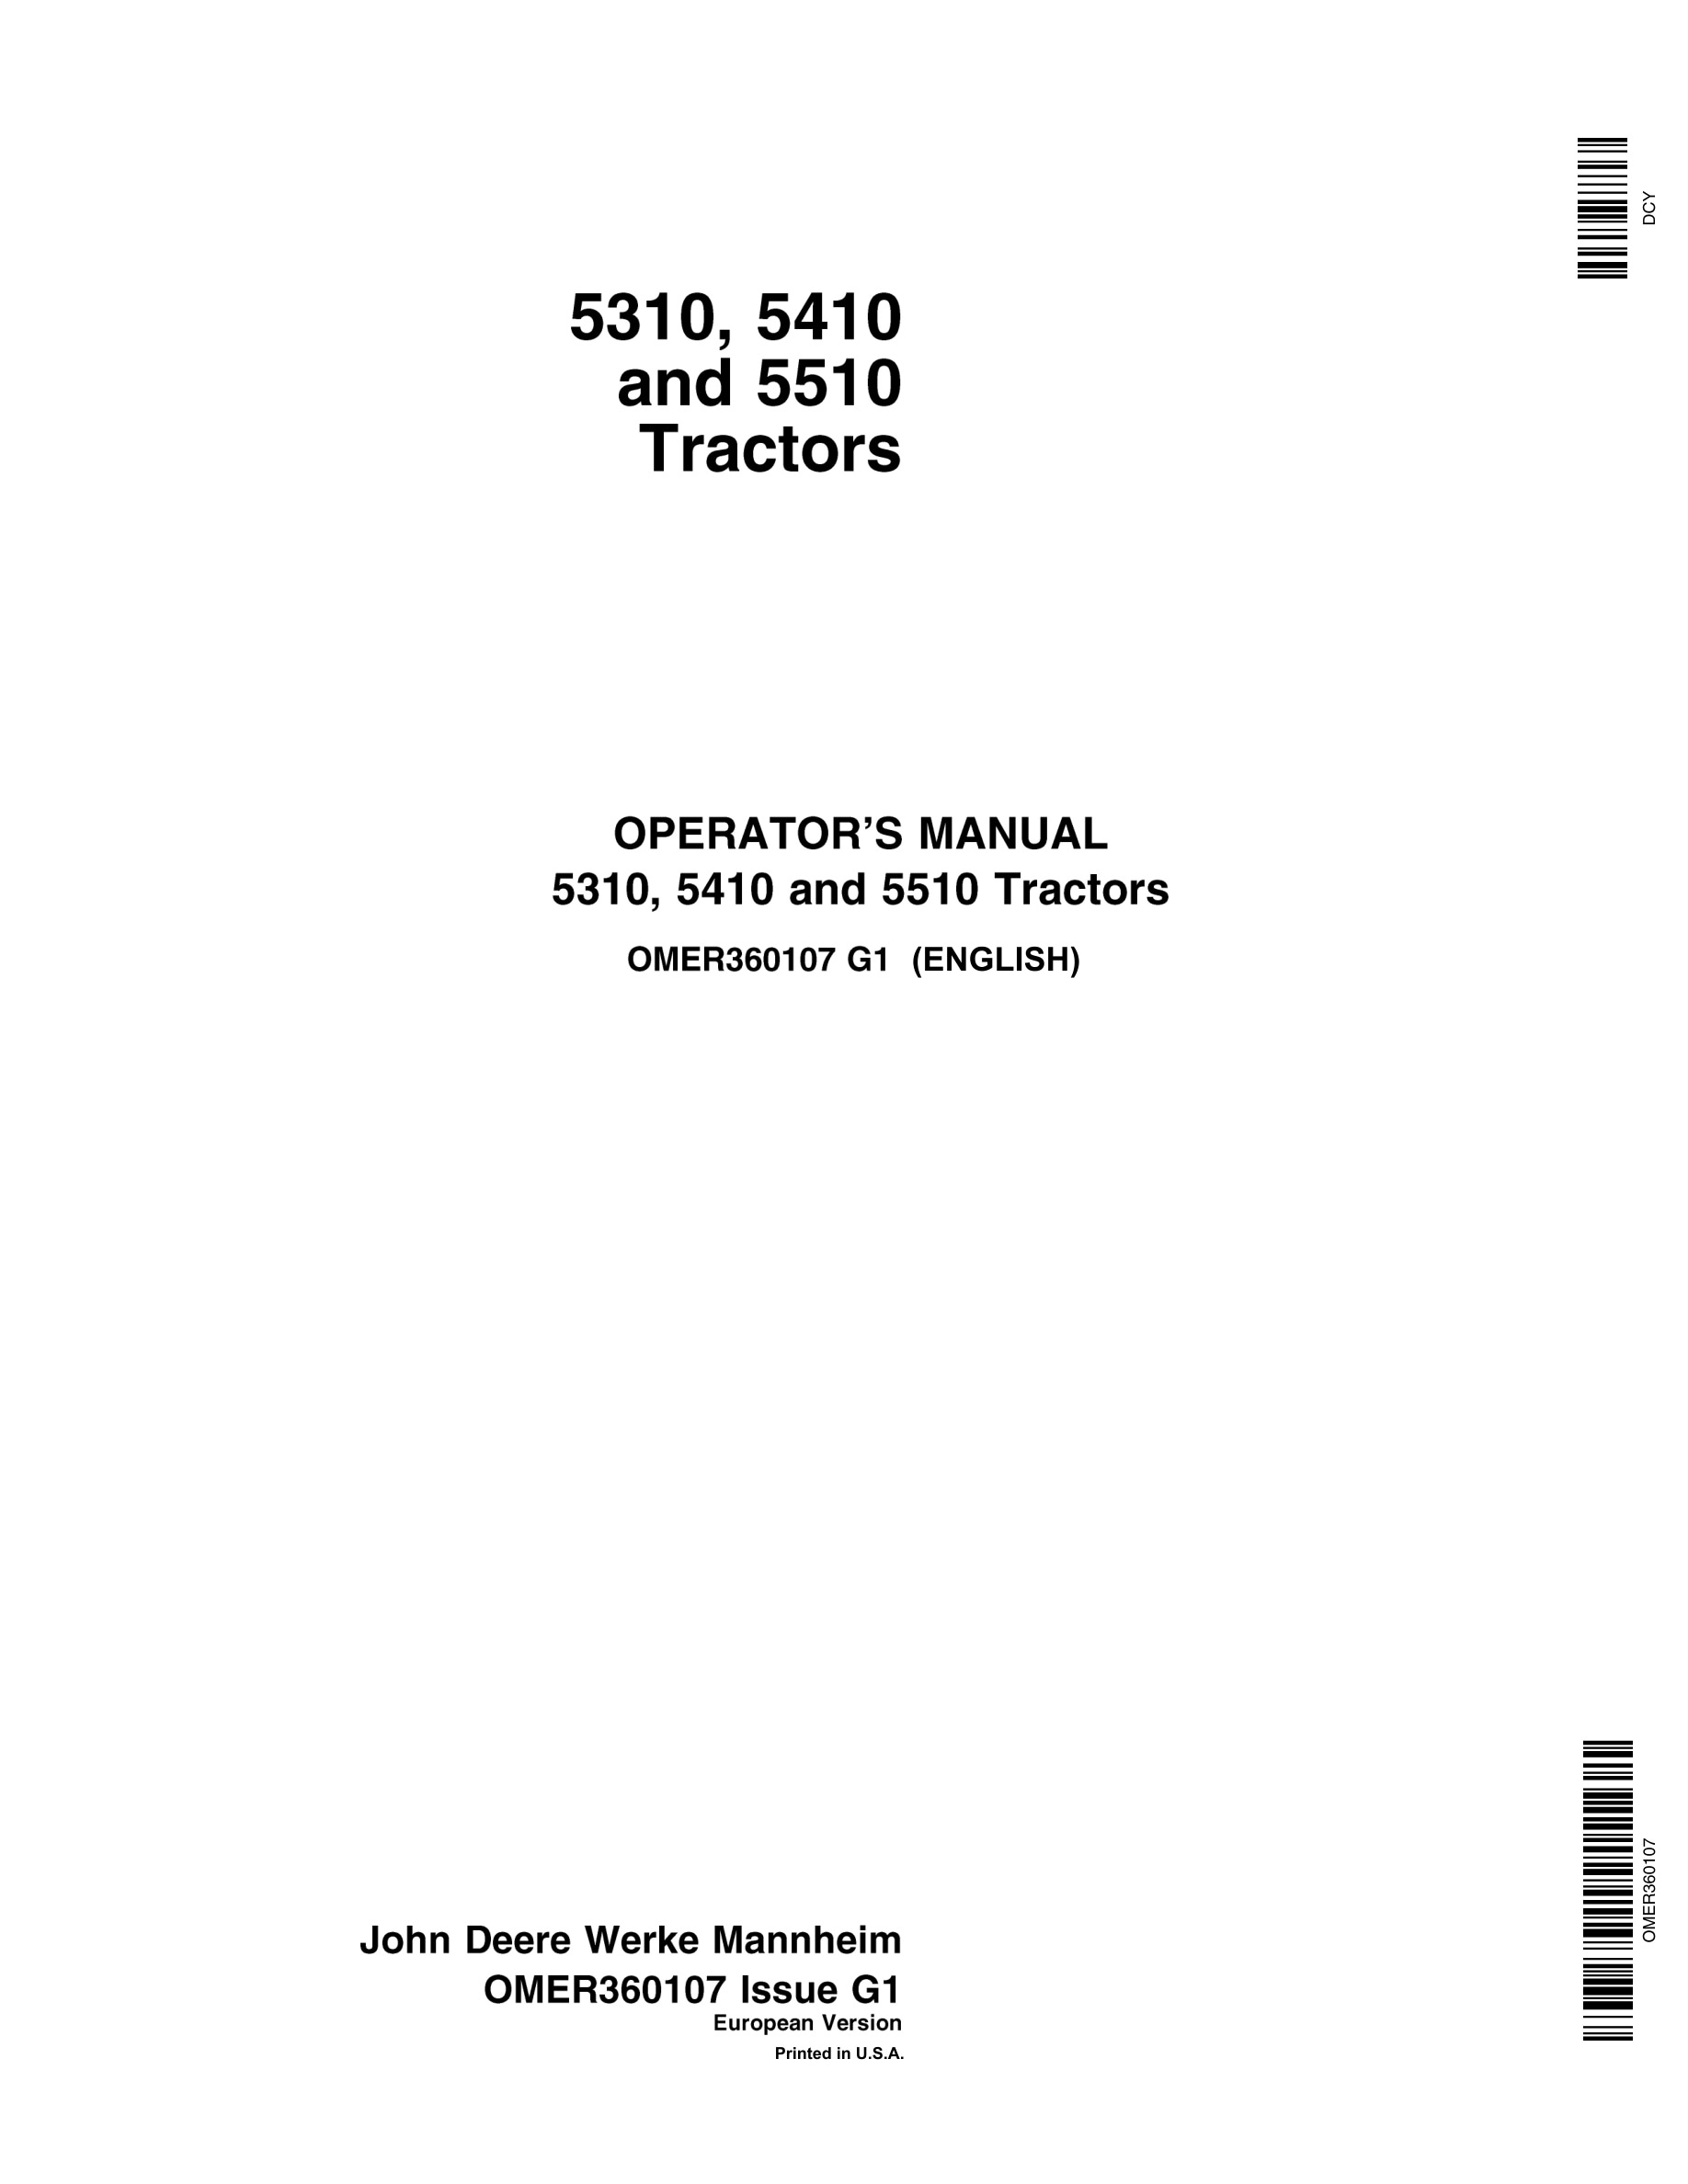 John Deere 5310 5410 5510 Tractors Operator Manuals OMER360107-1